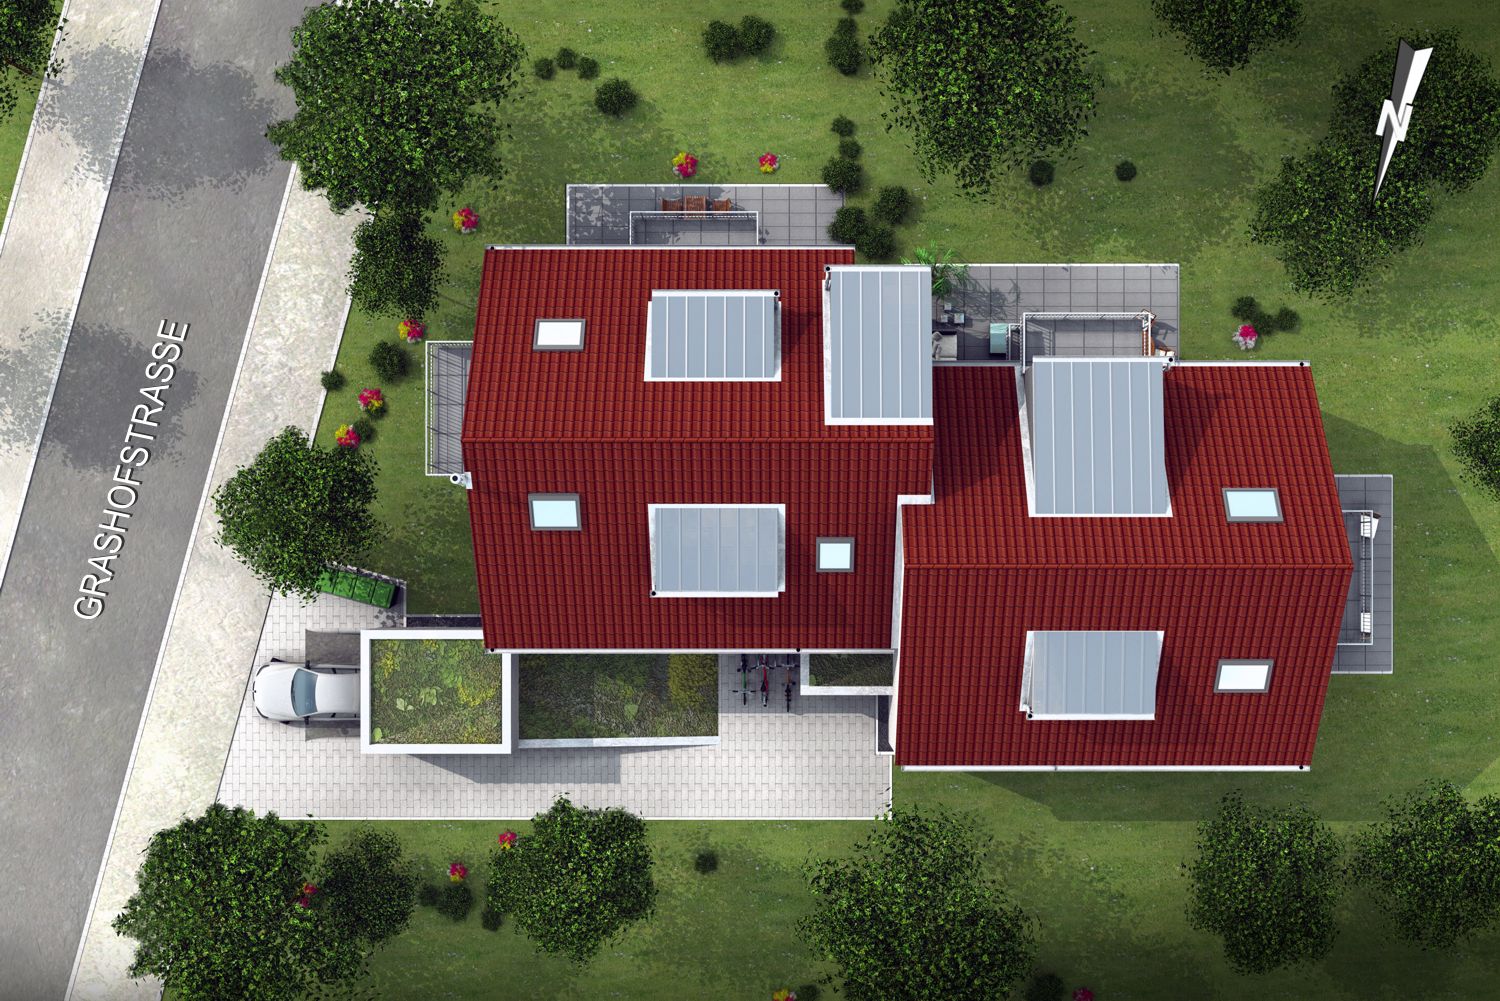 Architekturvisualisierung 3D Lageplan / Draufsicht Neubau eines Mehrfamilienhauses in Grahofstraße / München für Rebl & Penzkofer Immobilien (Jahr 2020)